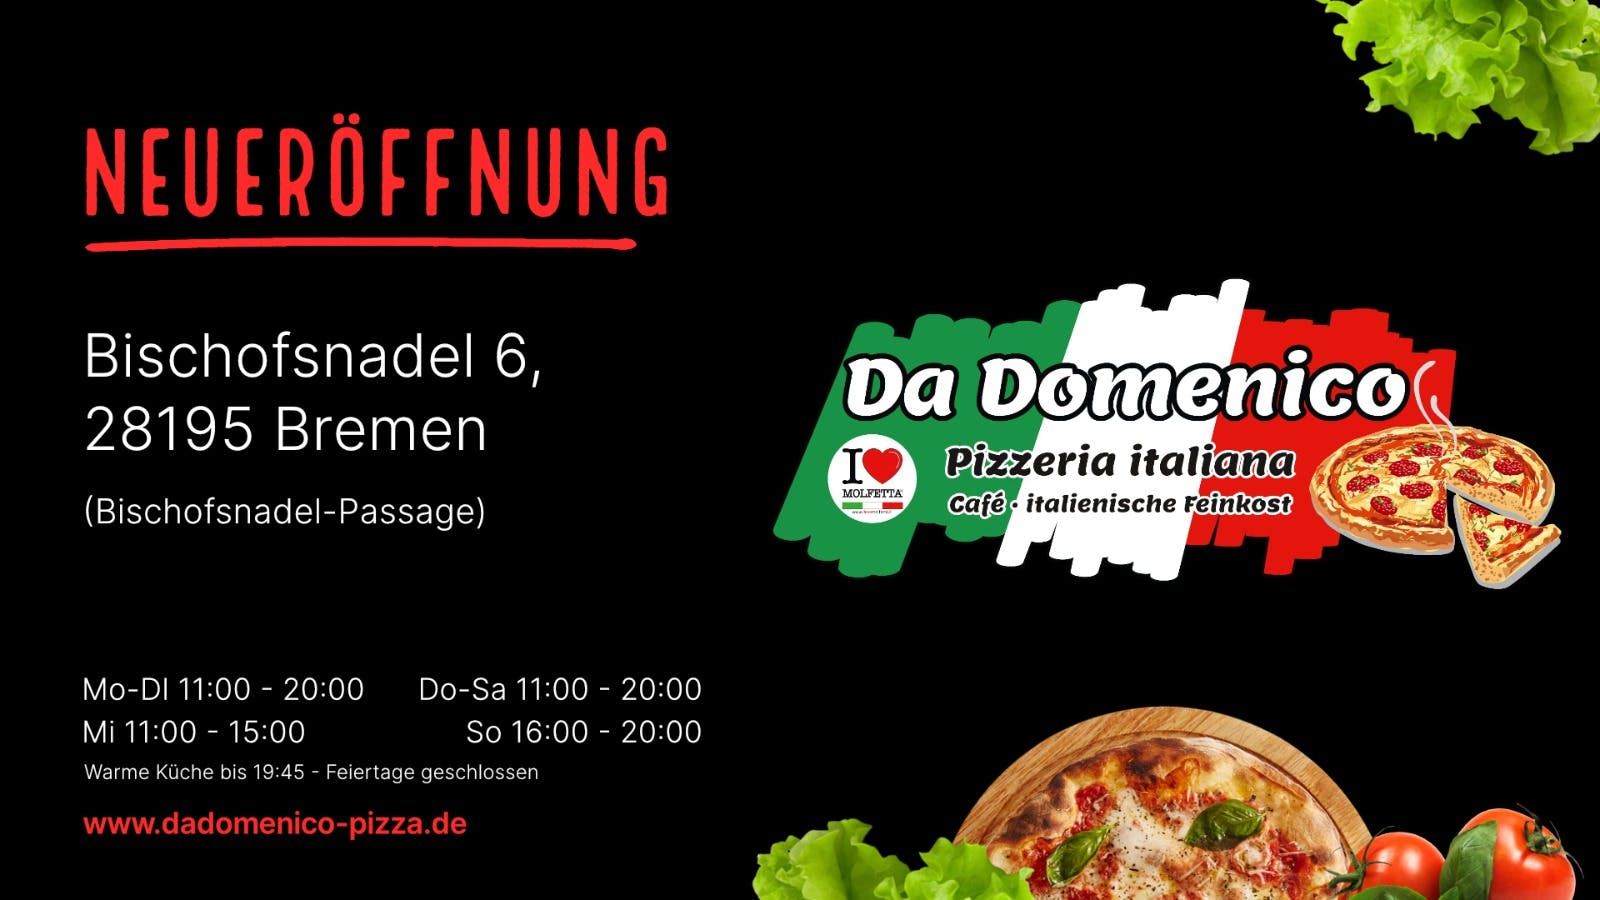 Online-Shop von Da Domenico Pizzeria & Feinkost Cafe in Bremen